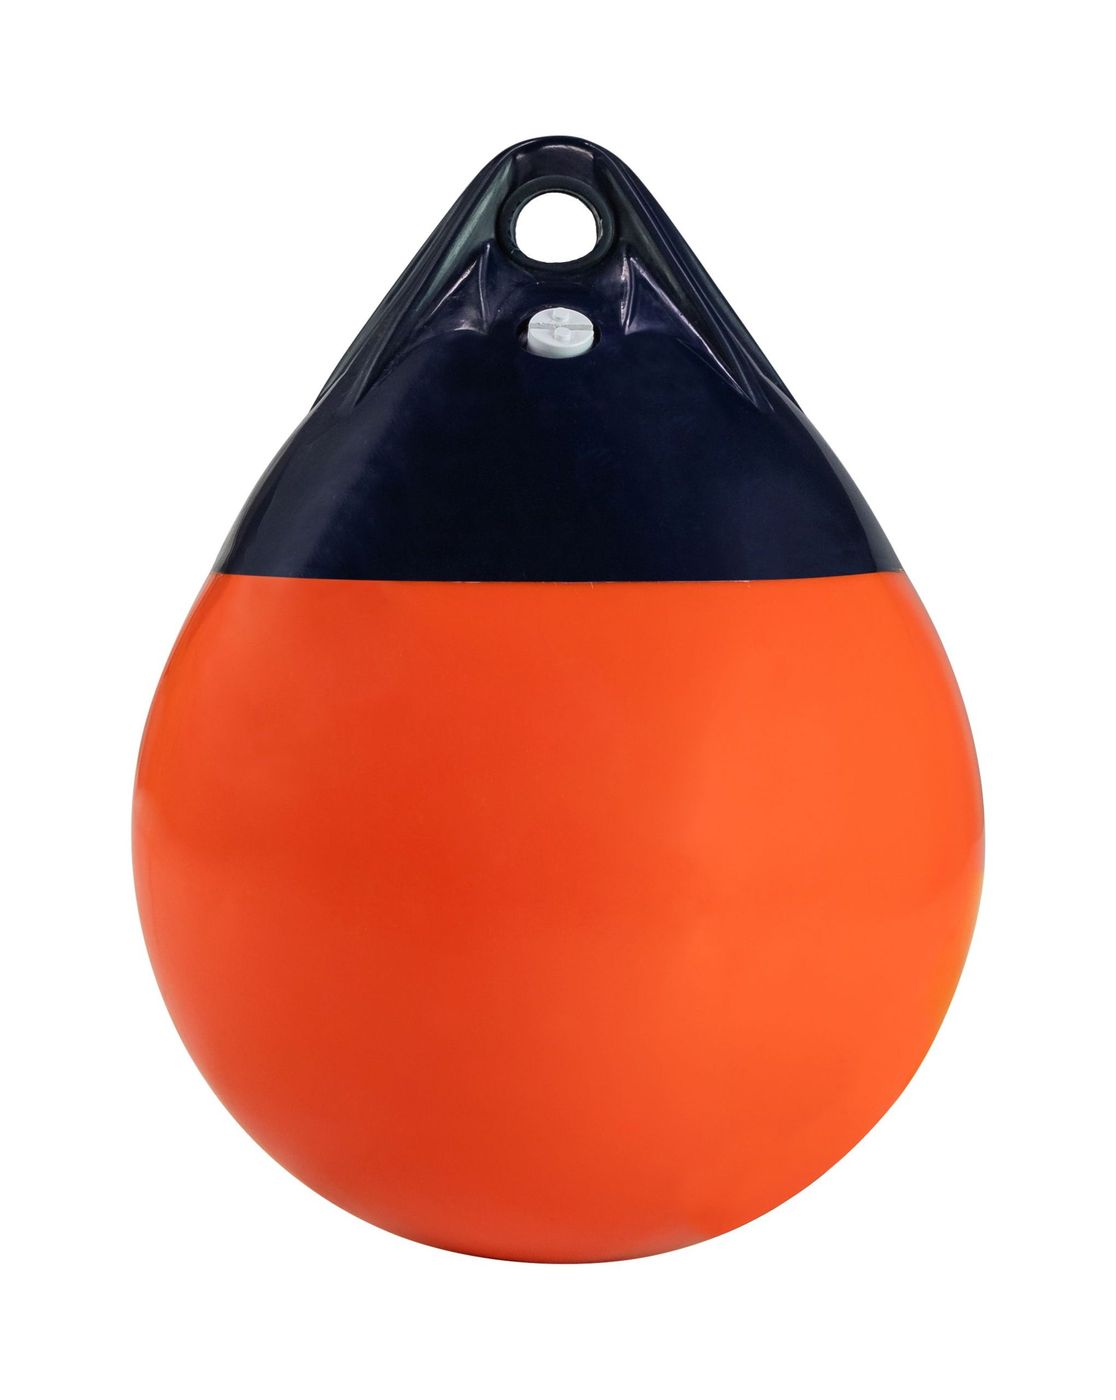 Буй Marine Rocket надувной, размер 280x210 мм, цвет оранжевый A0-MR пояс сигнальный светоотражающий с регулируемым размером эластичный оранжевый